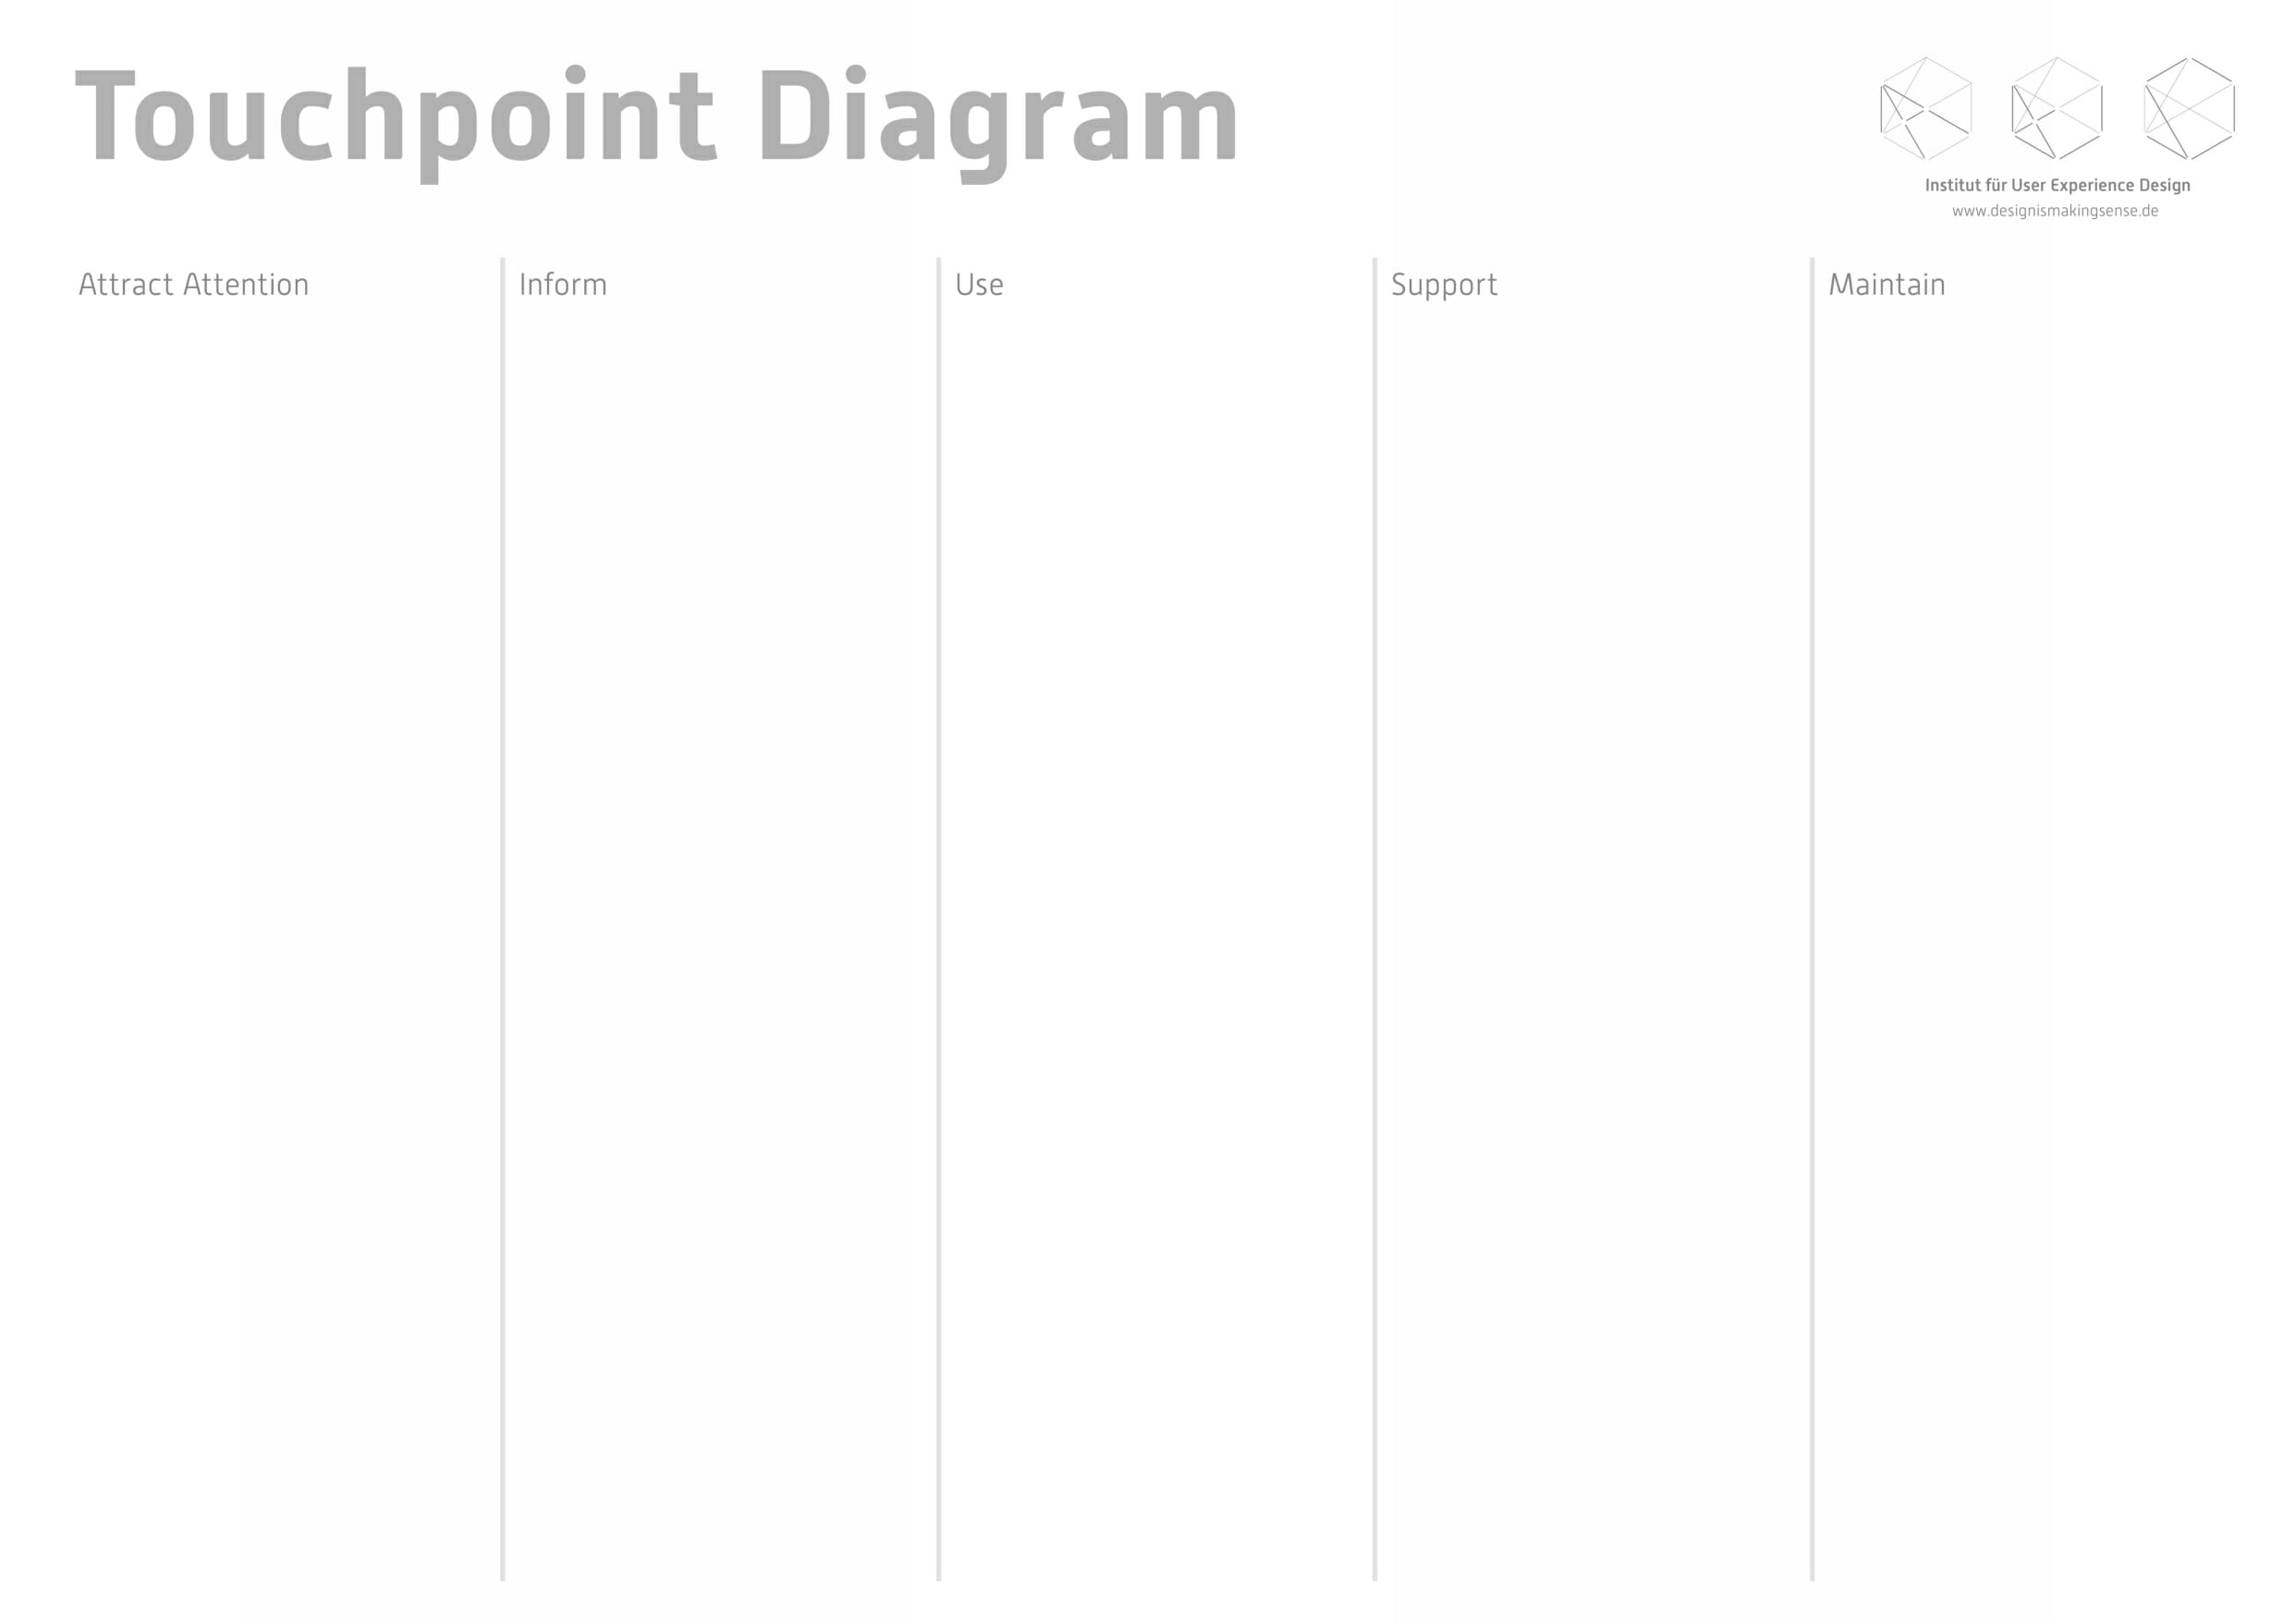 Touchpoint Diagramm. Toolkit für Service Design Thinking von Prof. Torsten Stapelkamp, Institut für User Experience Design, www.designismakingsense.de